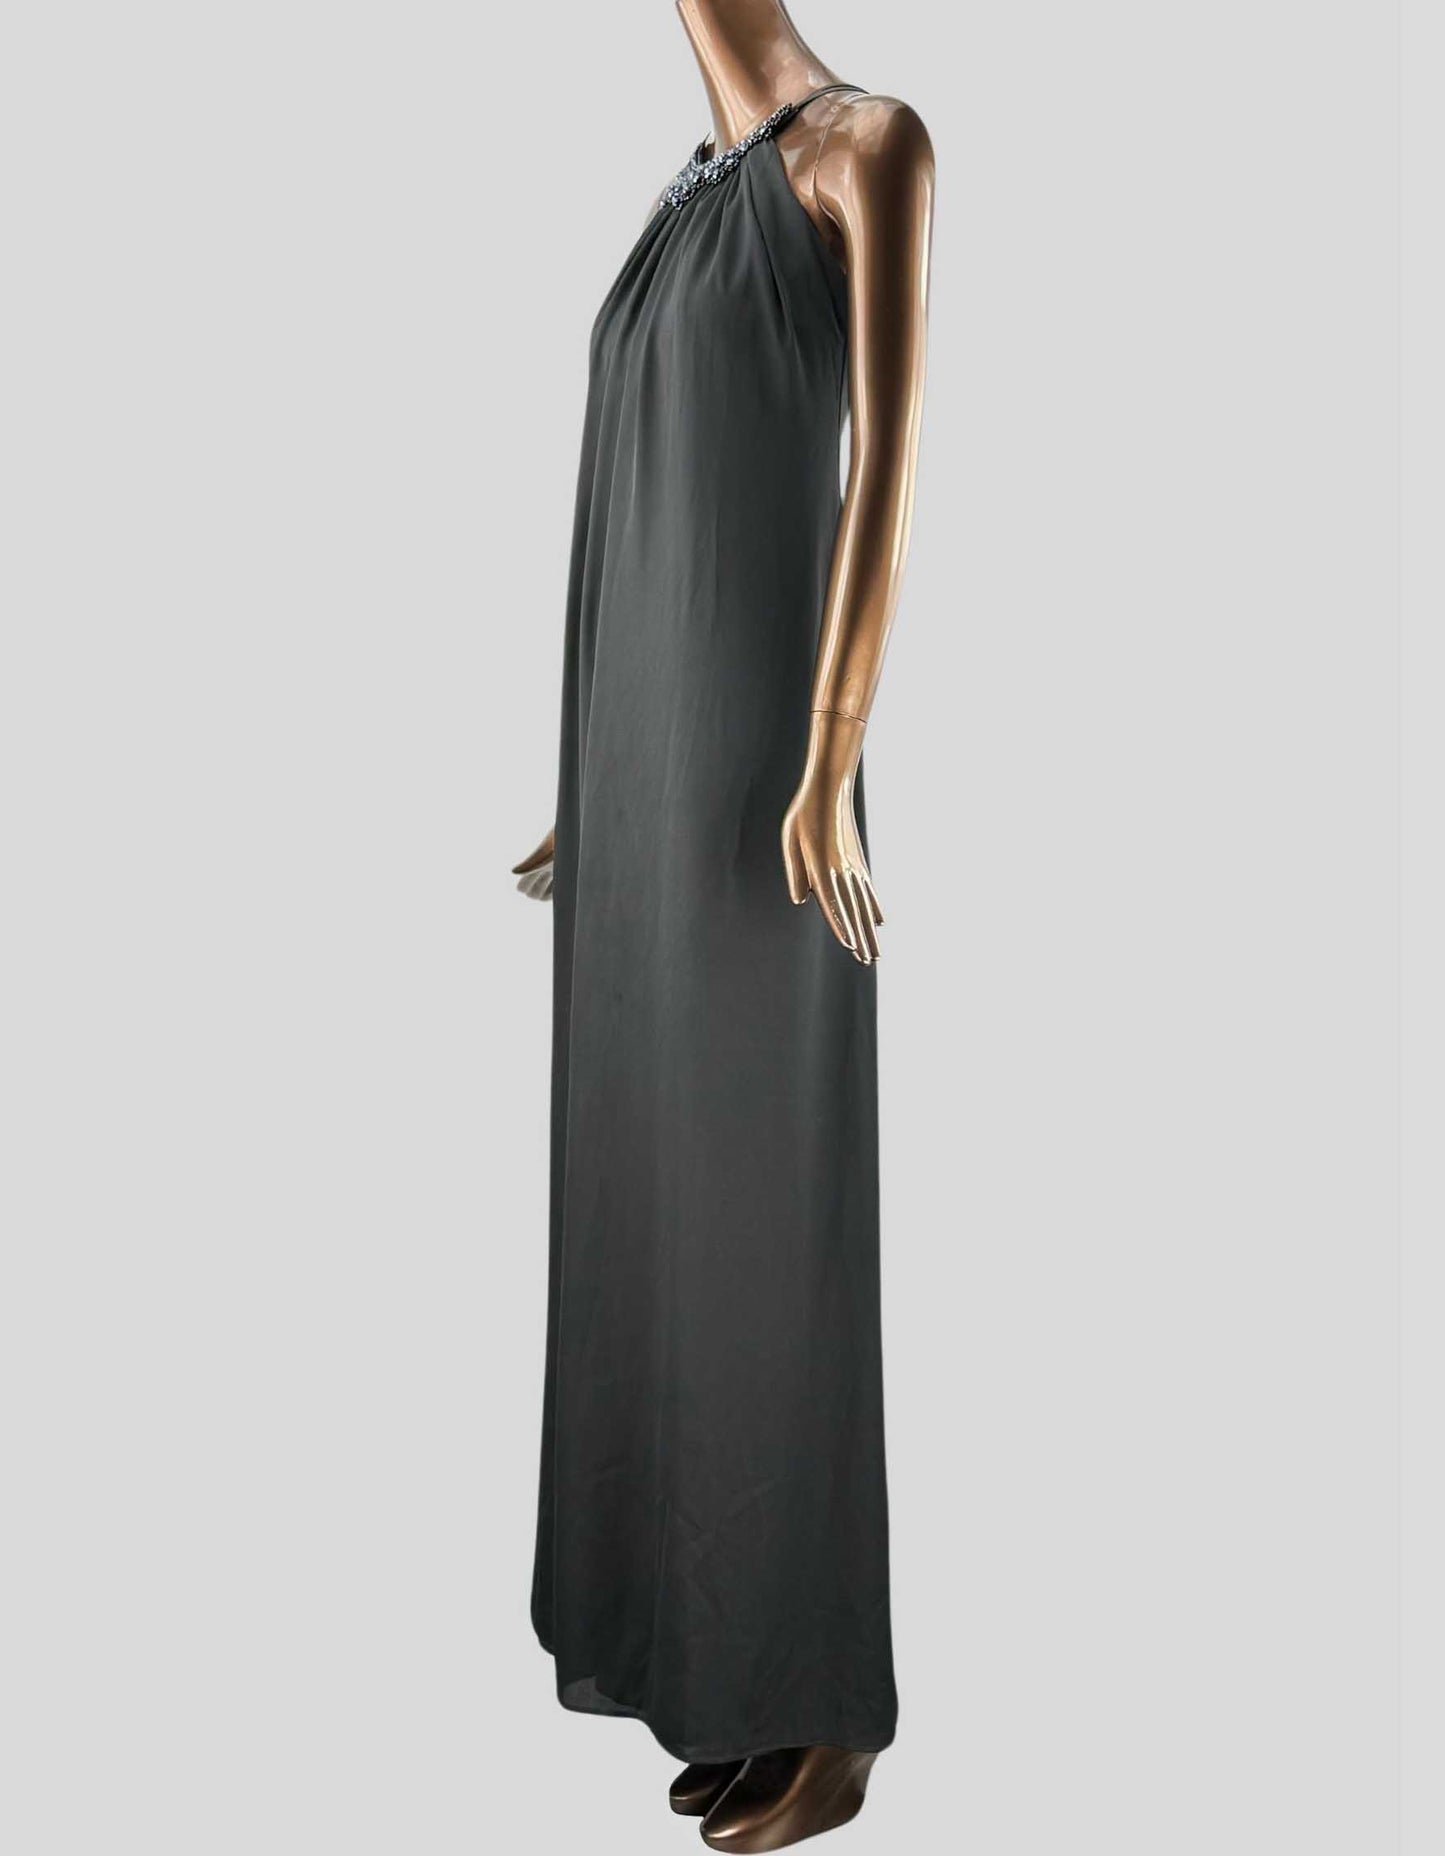 RUE DE LA PAIX Long Black Dress - 8 US